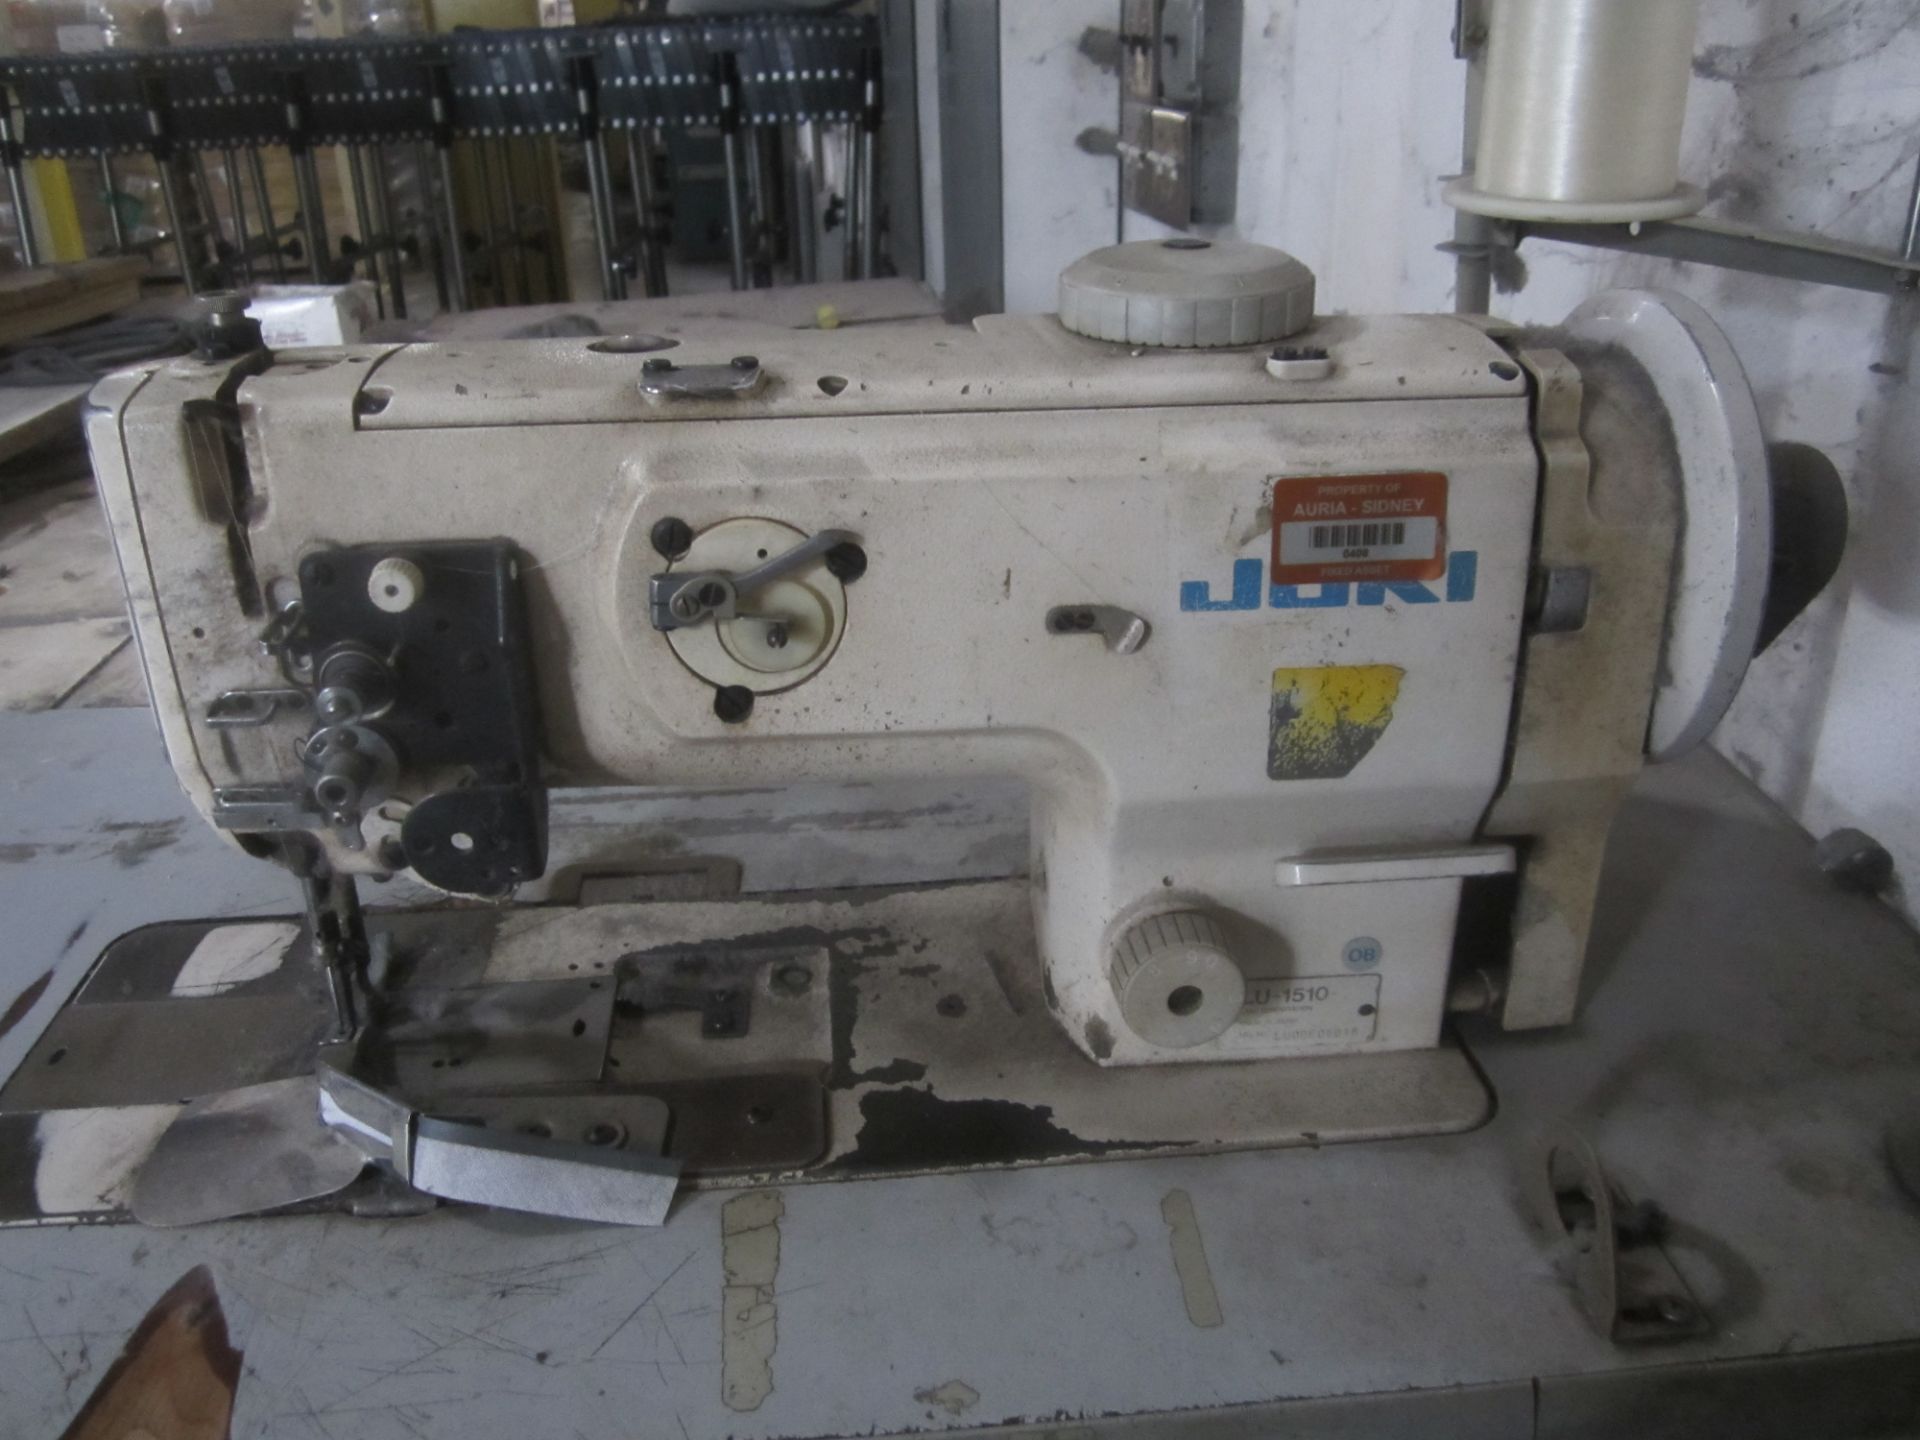 Juki Model LU-1510 Industrial Sewing Machine, s/n LU0DE06018, with Table - Image 2 of 3